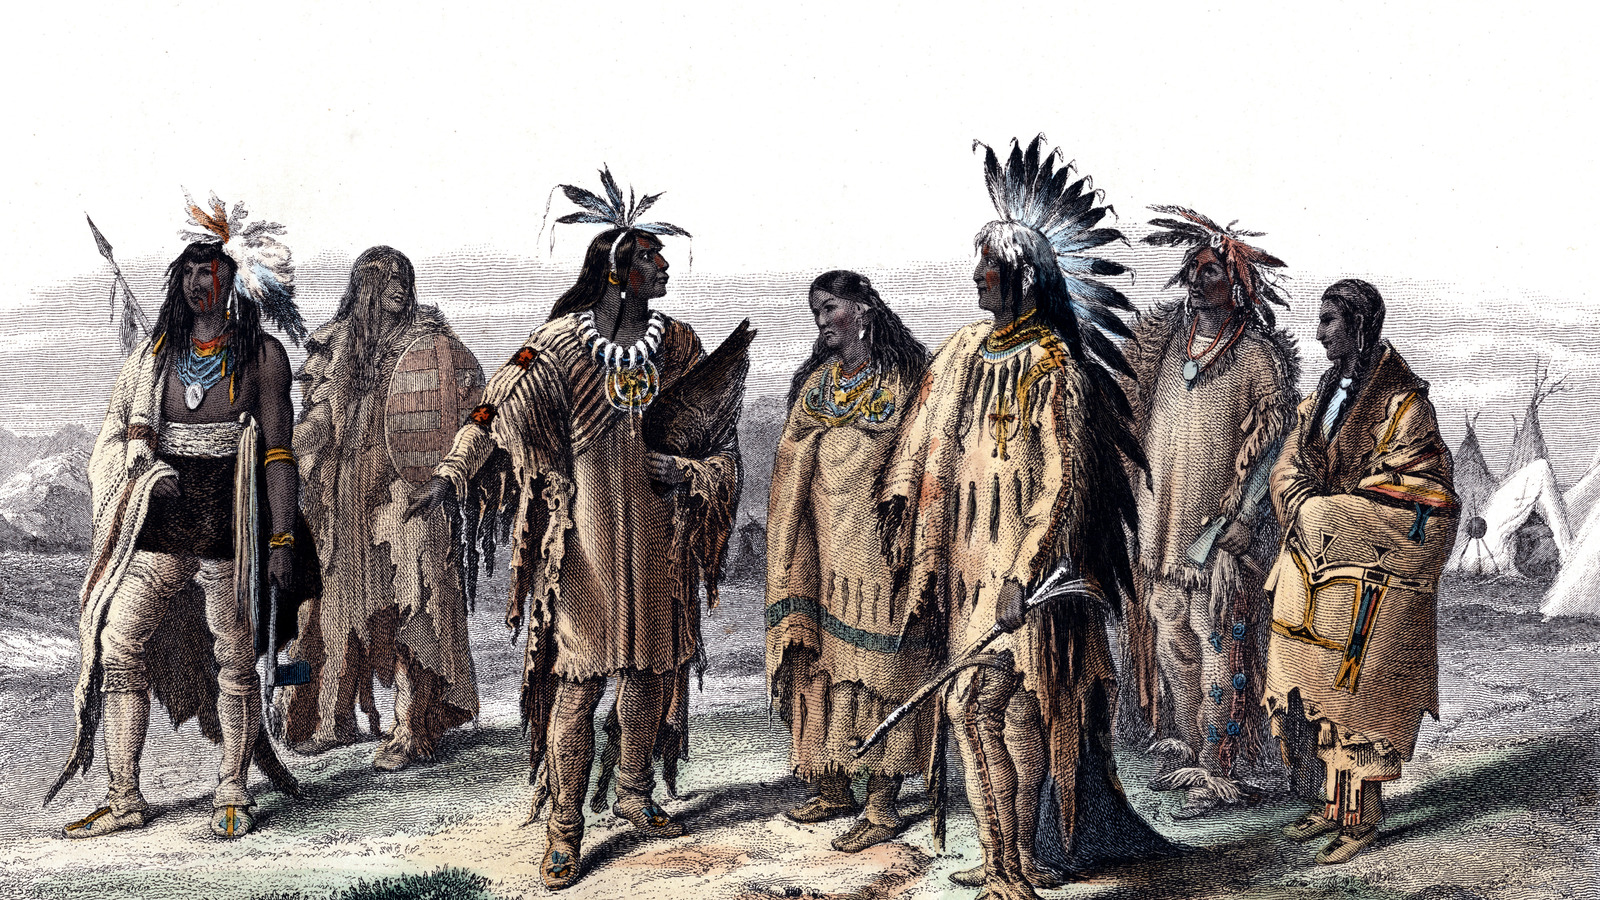 Коренная нация северной америки. Американские индейцы вожди индейцев Северной Америки. Коренные индейцы Северной Америки. Коренные жители Америки индейцы. Коренные жители Южной Америки индейцы.